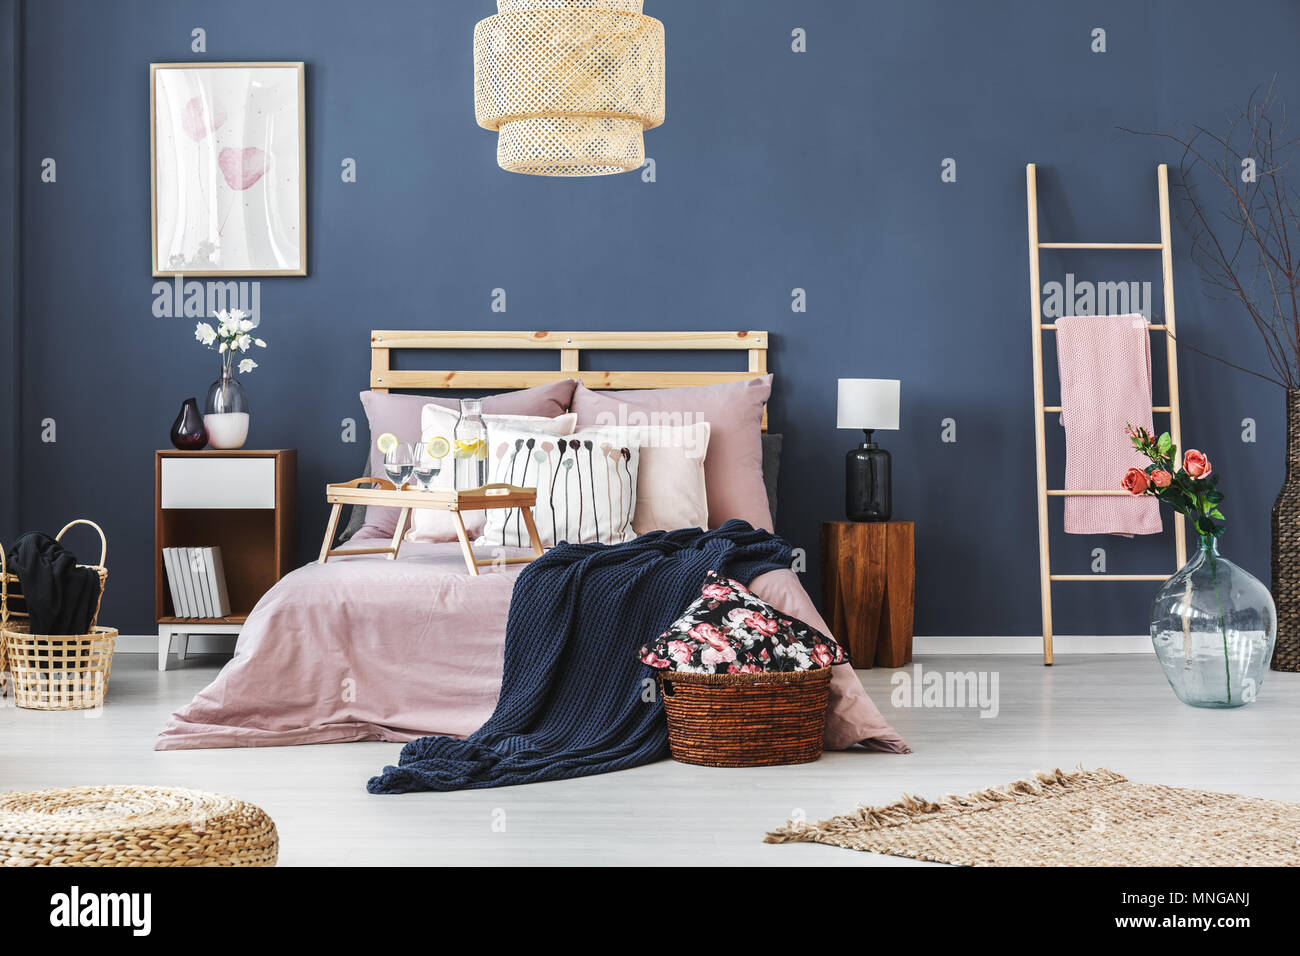 Gemütliche komplett Schlafzimmer mit Blumenmotiv Dekorationen eingerichtet Stockfoto